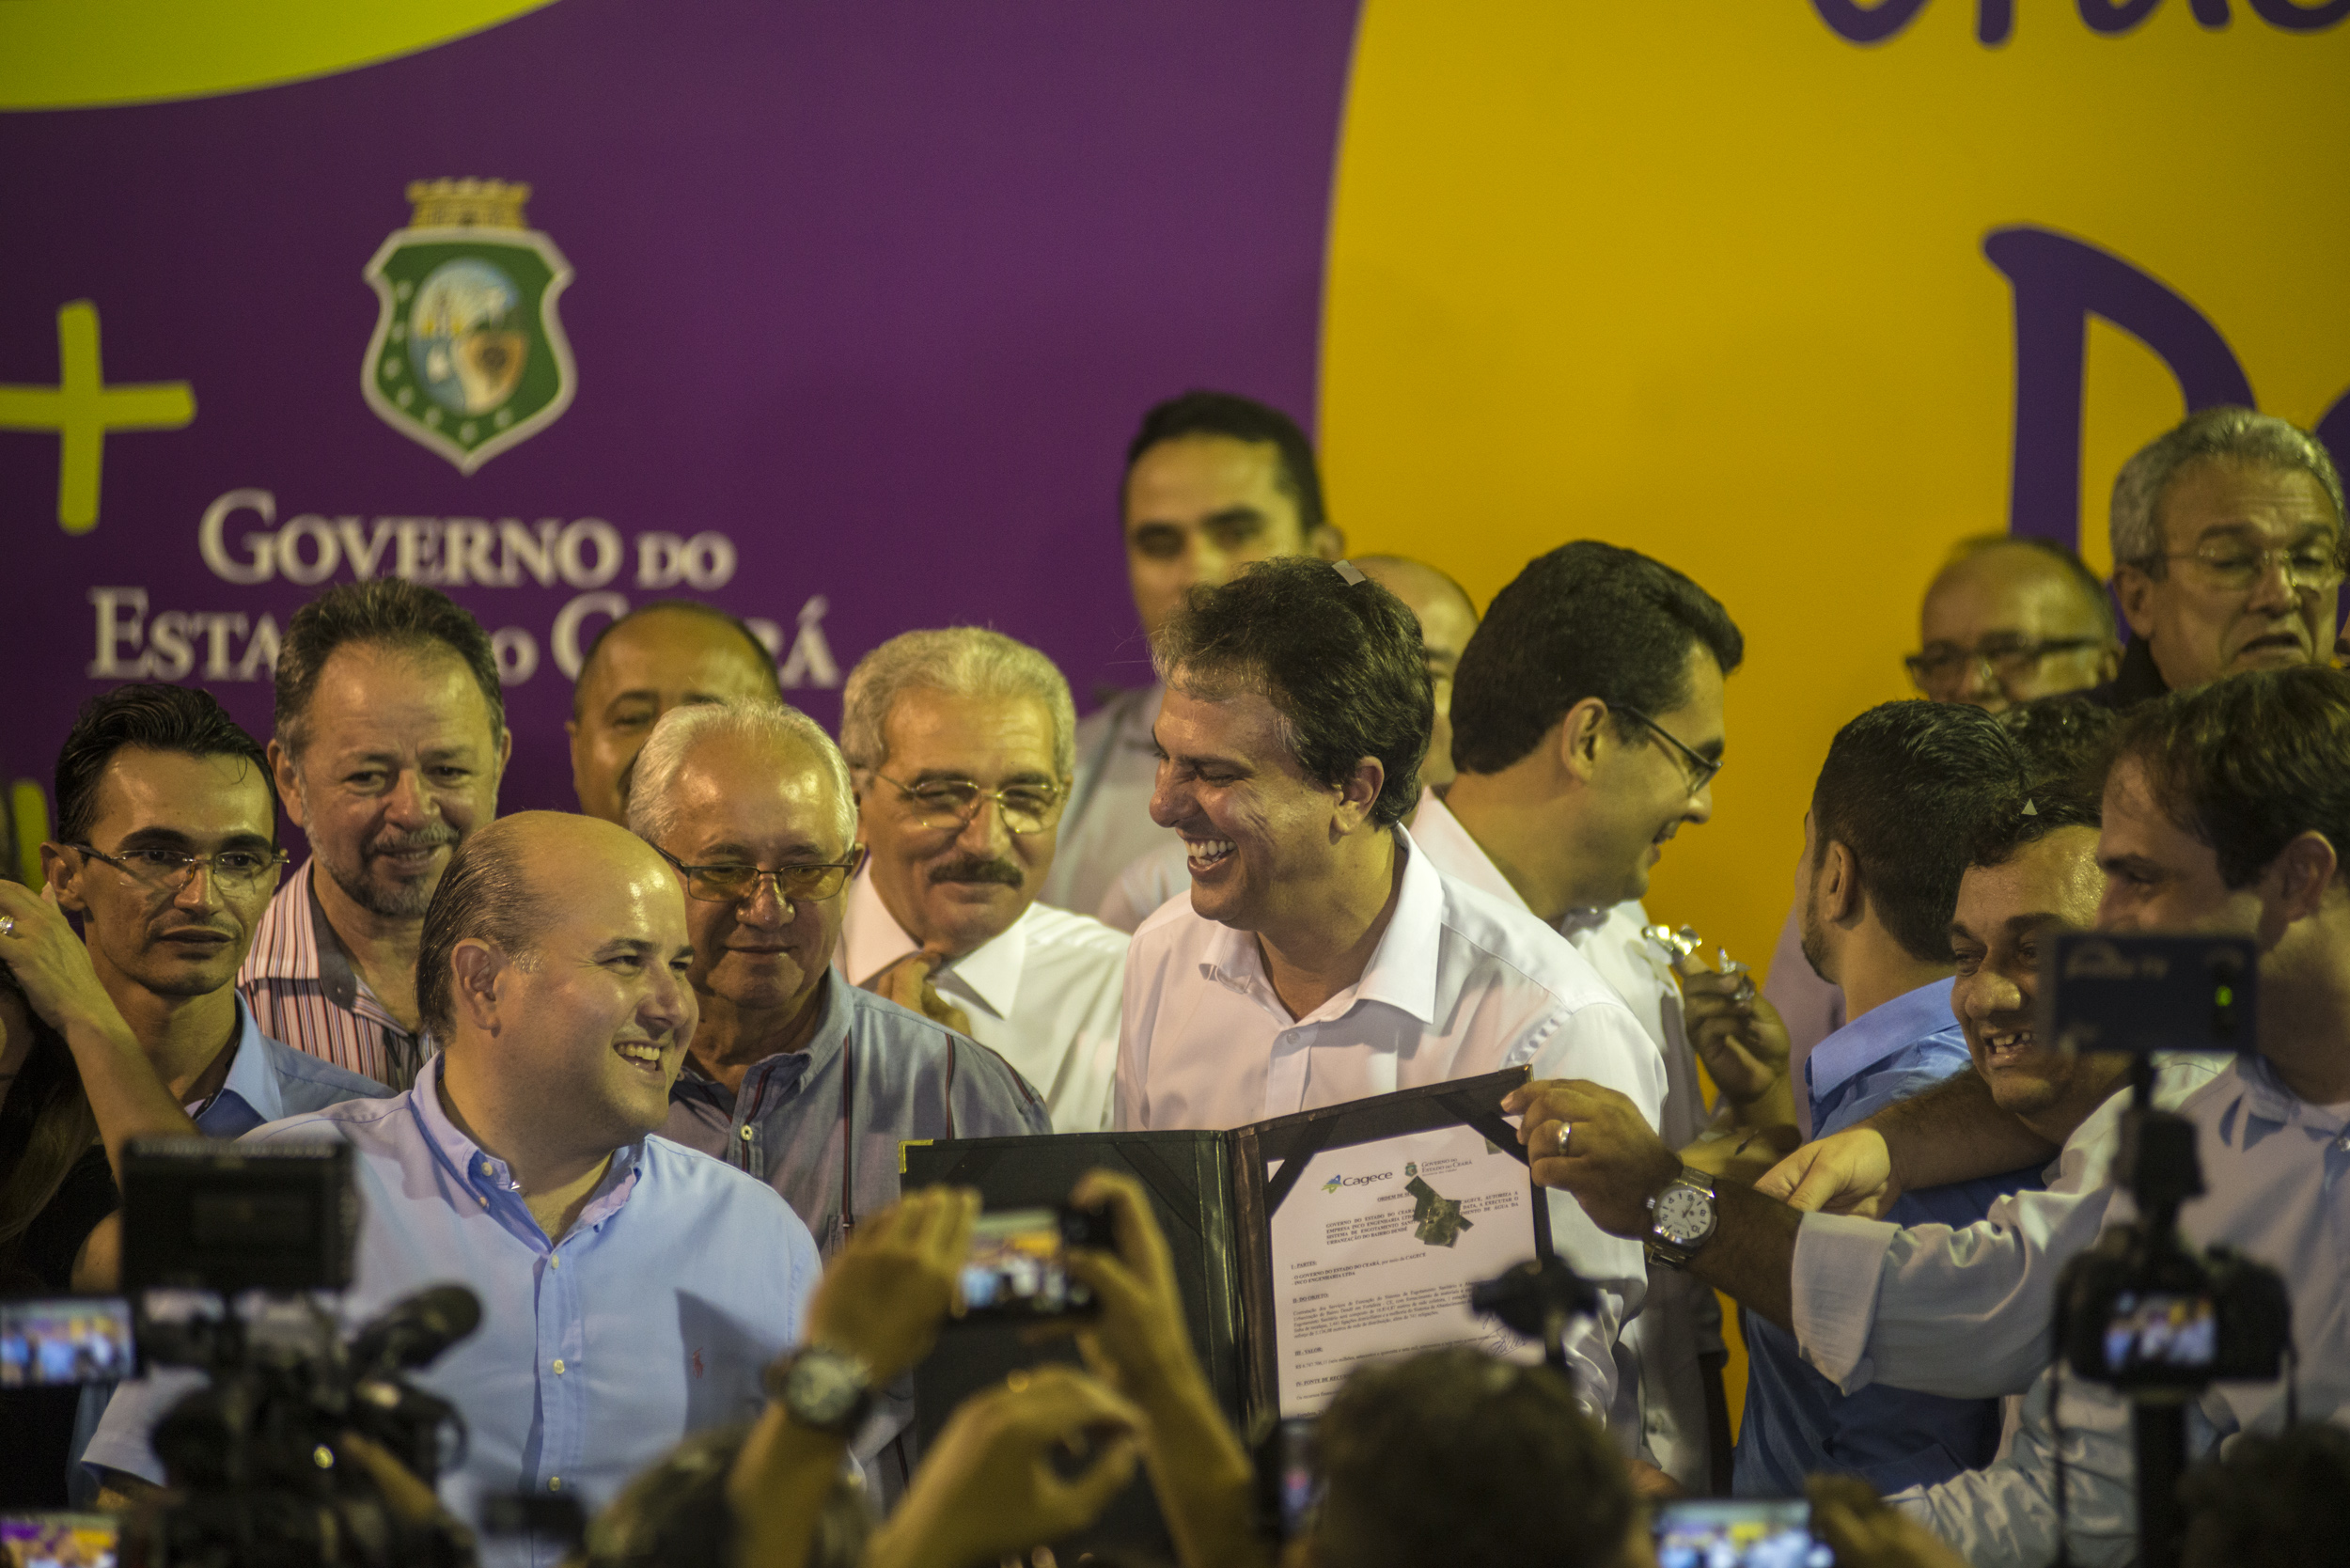 Juntos Por Fortaleza - foto do palco com Governador do Ceará e Prefeito de Fortaleza. Foto: Davi Pinheiro